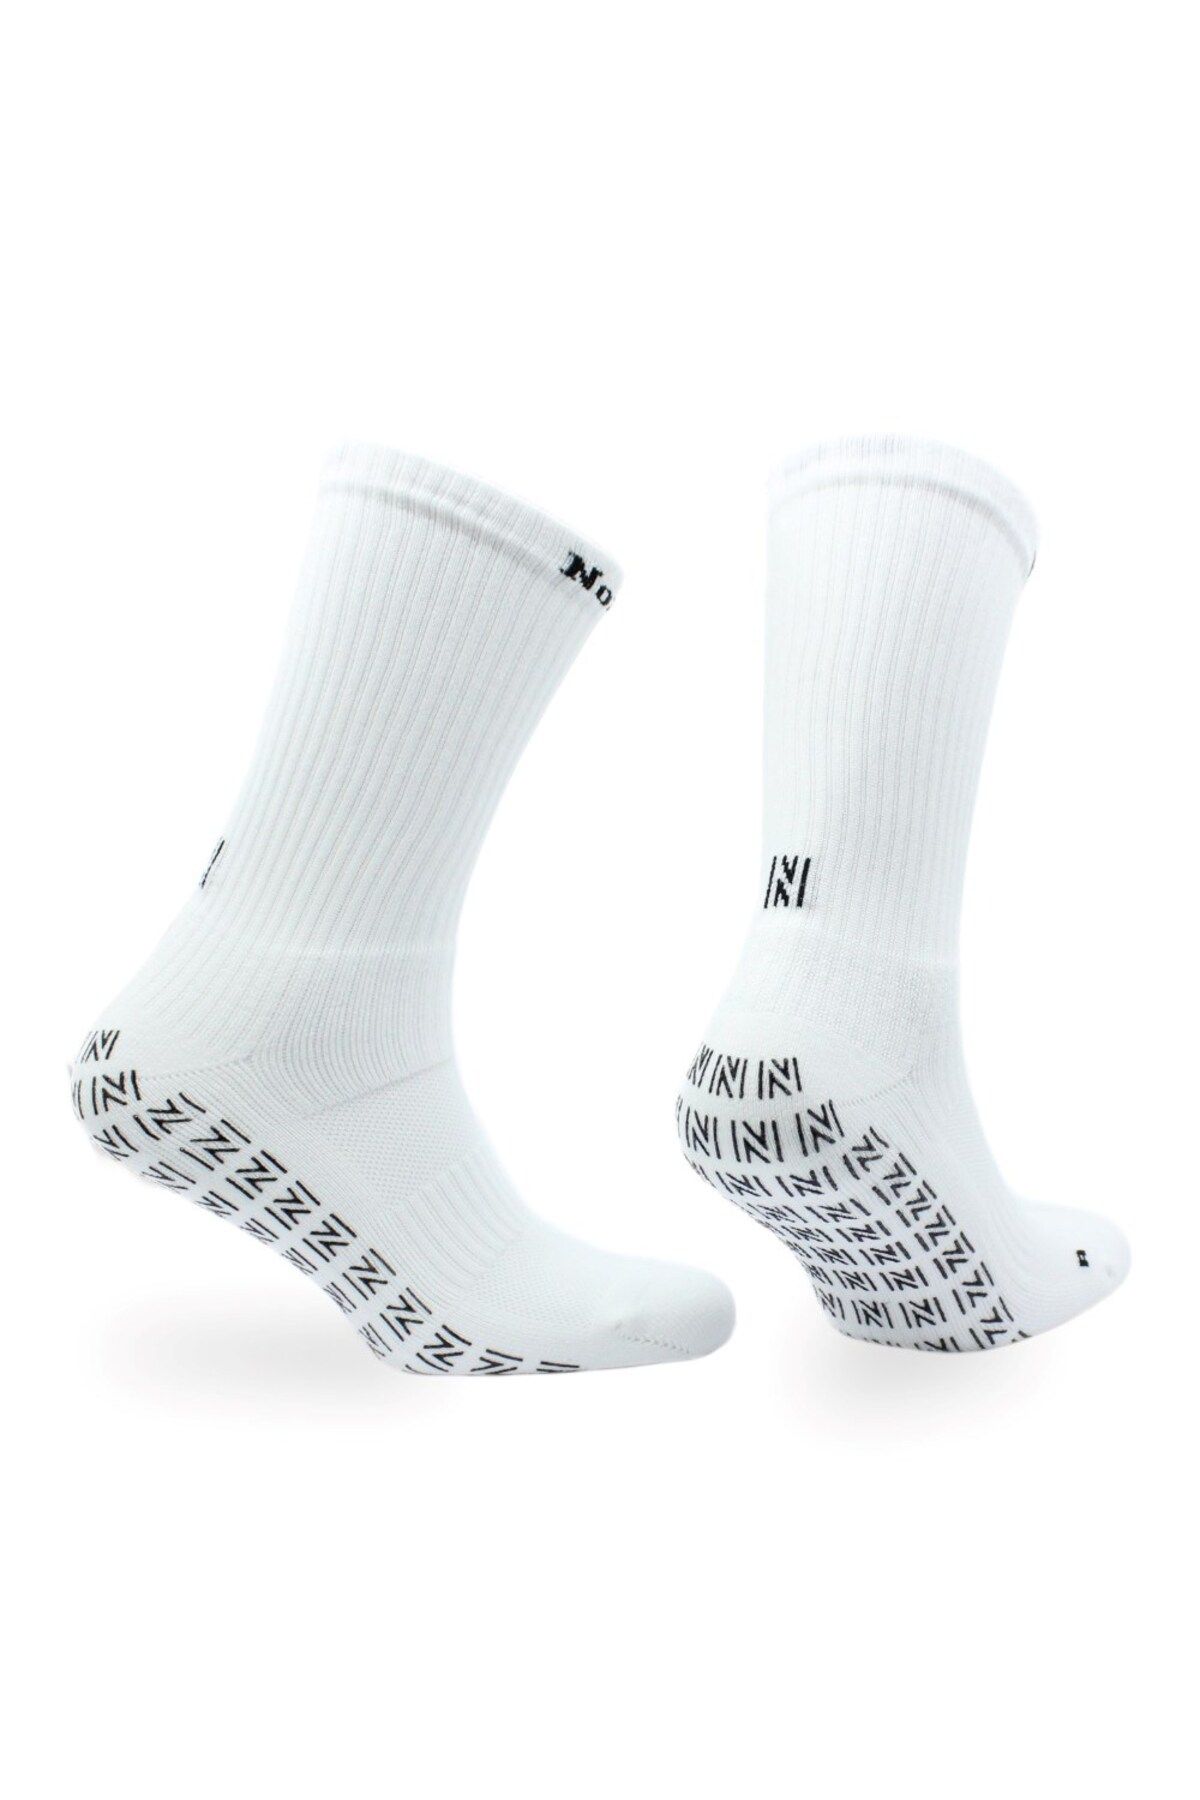 Norfolk Sports Socks